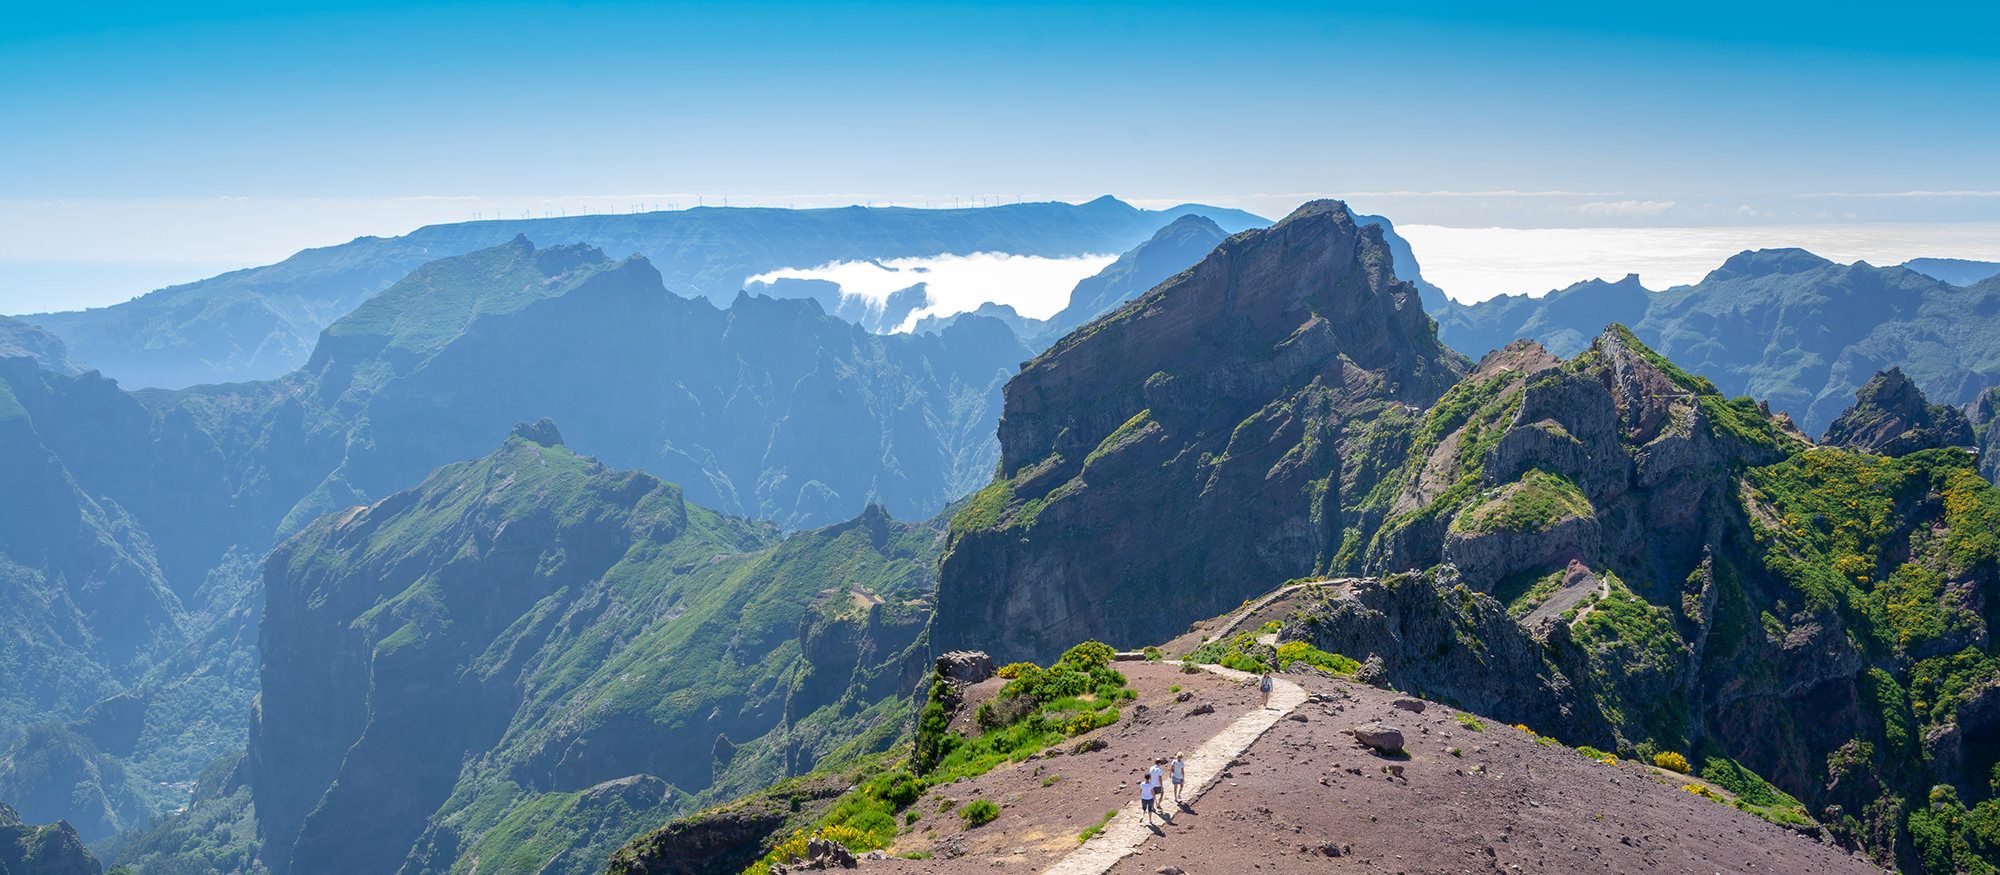 Pico do Arieiro - Madeira Island